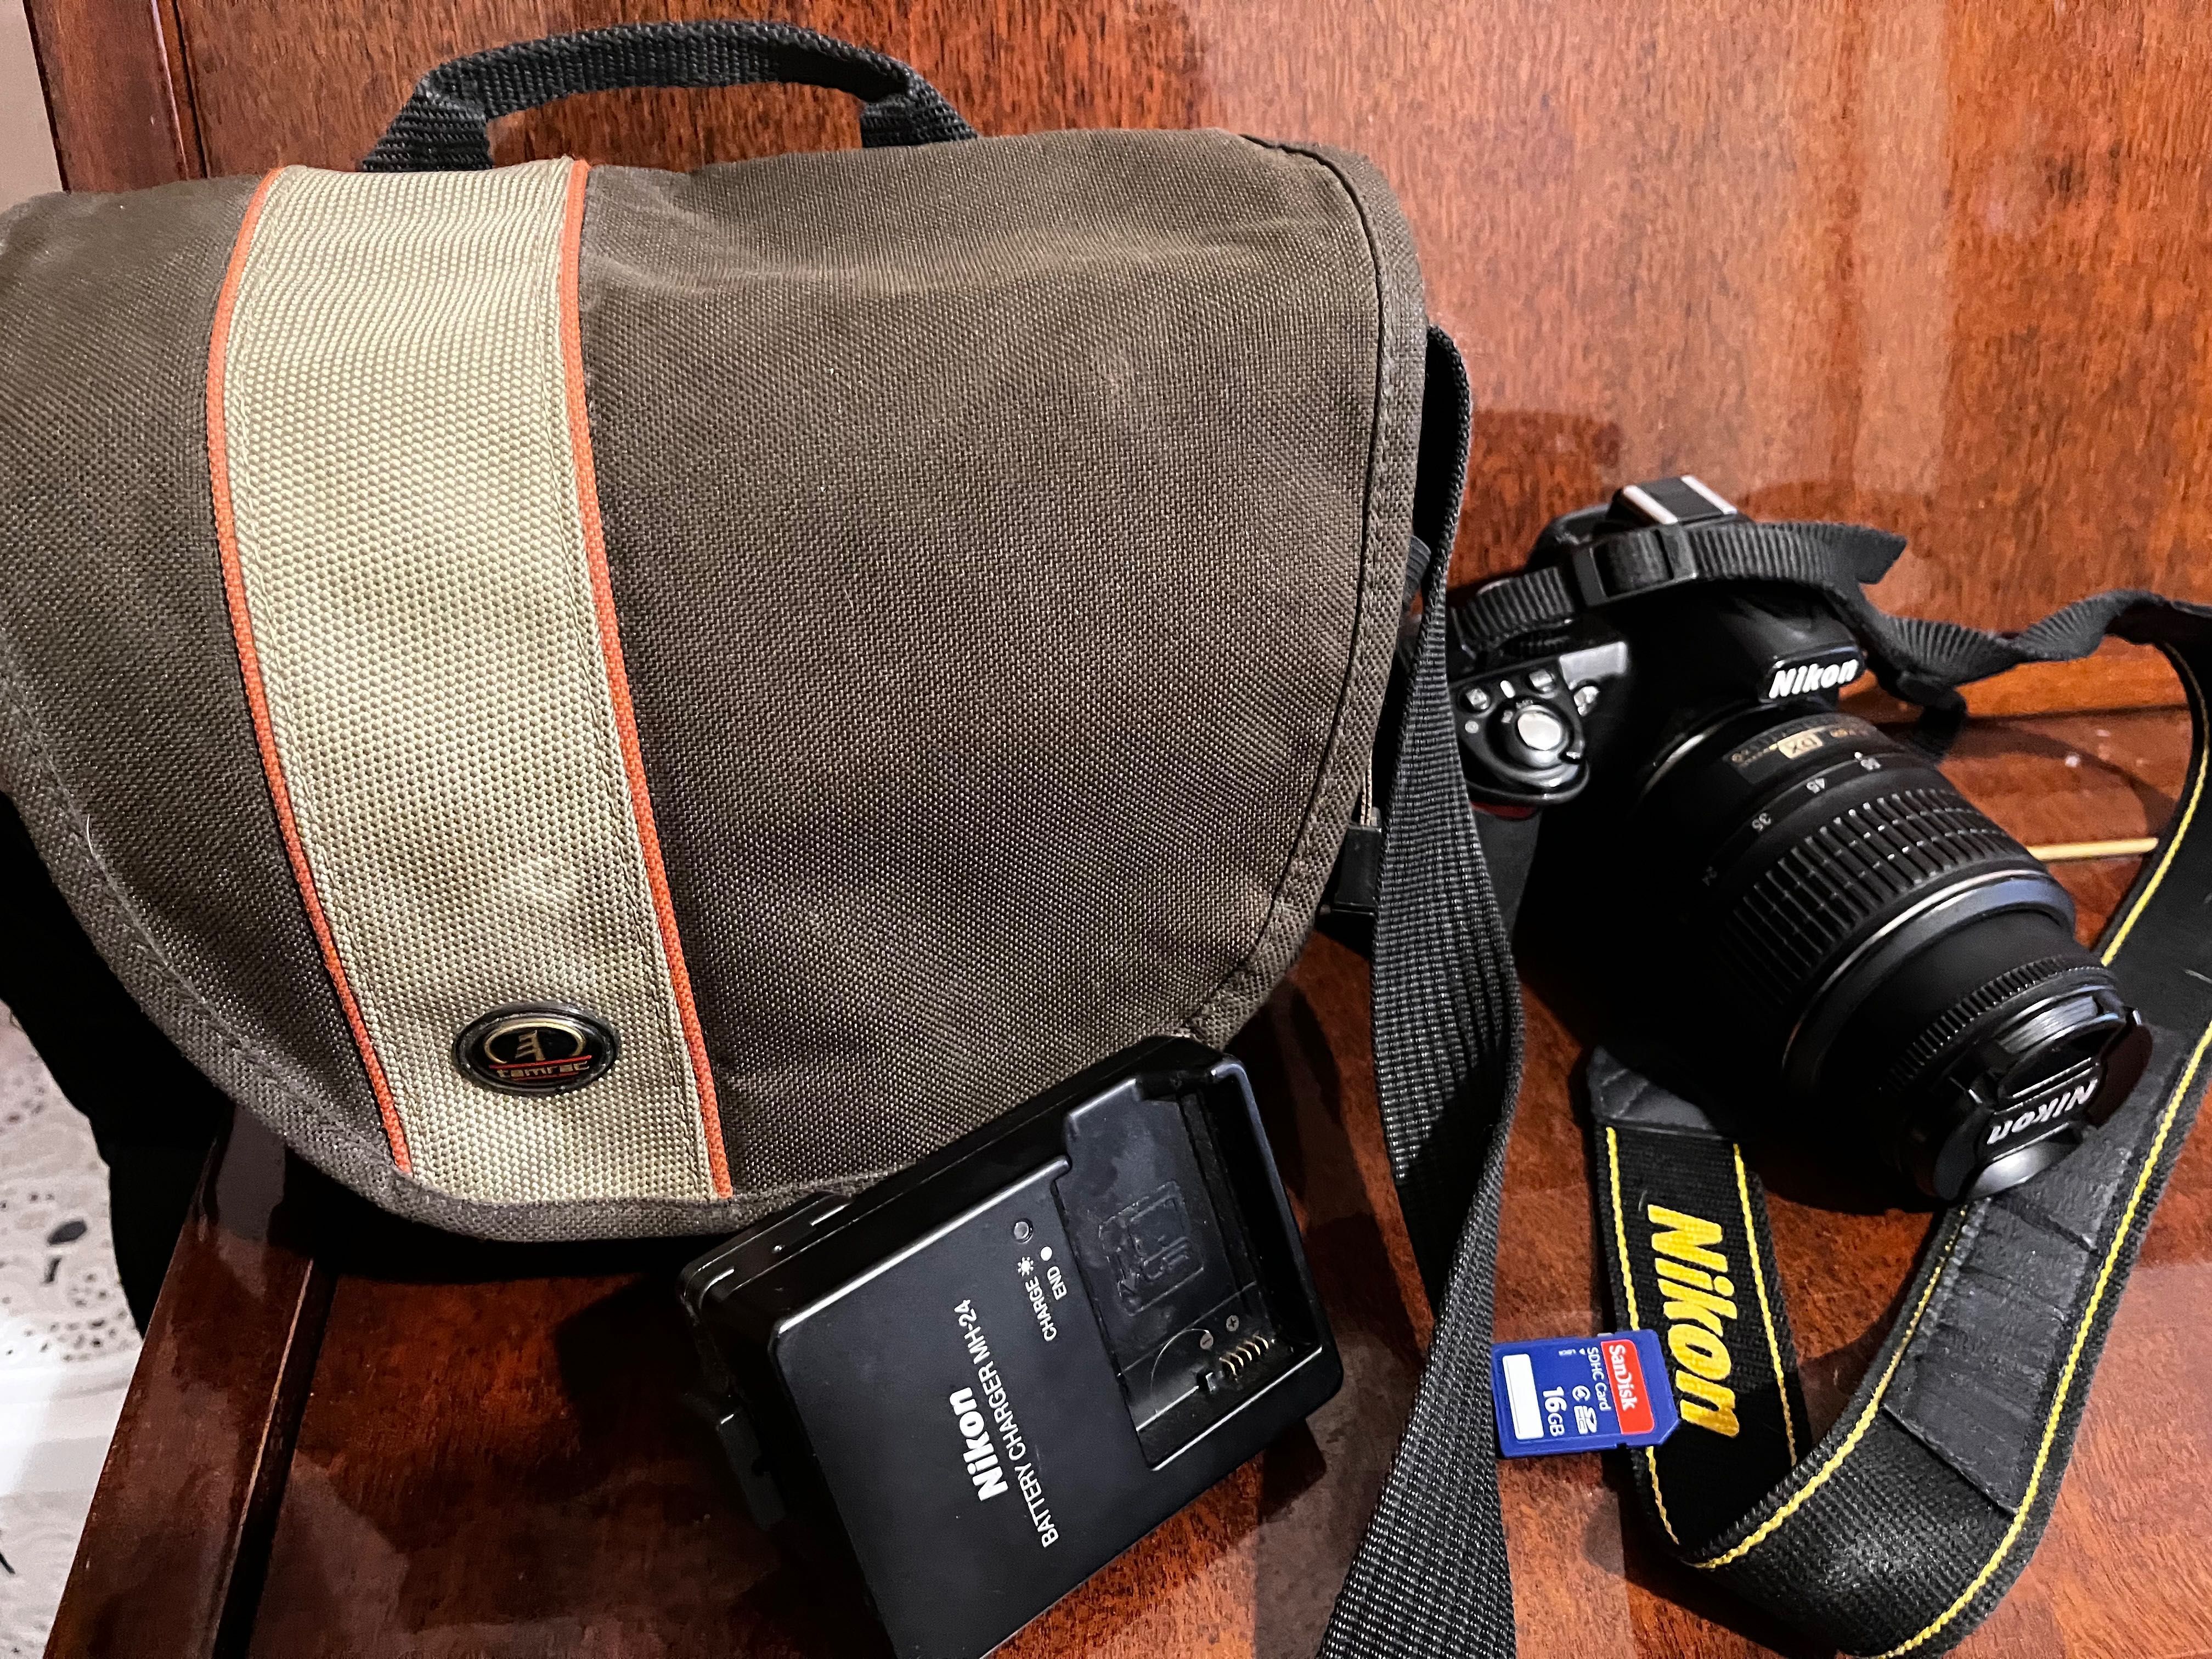 Дзеркальна фотокамера Nikon D3100 ідеальний стан без дефектів